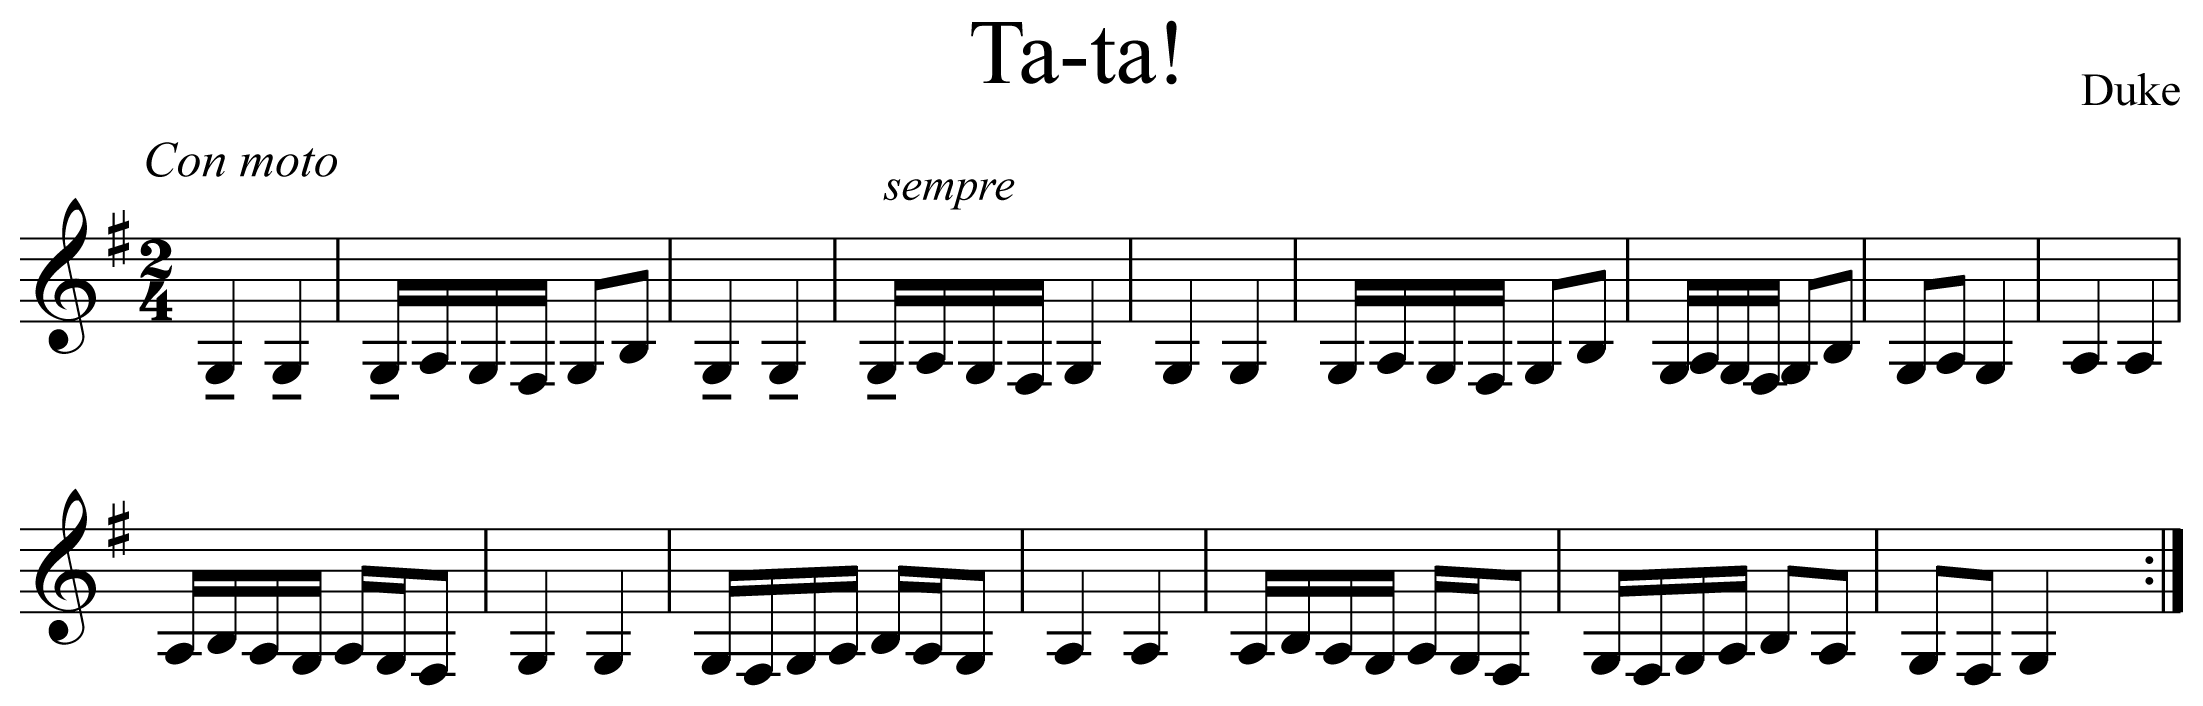 Ta-ta! Notation Clarinet